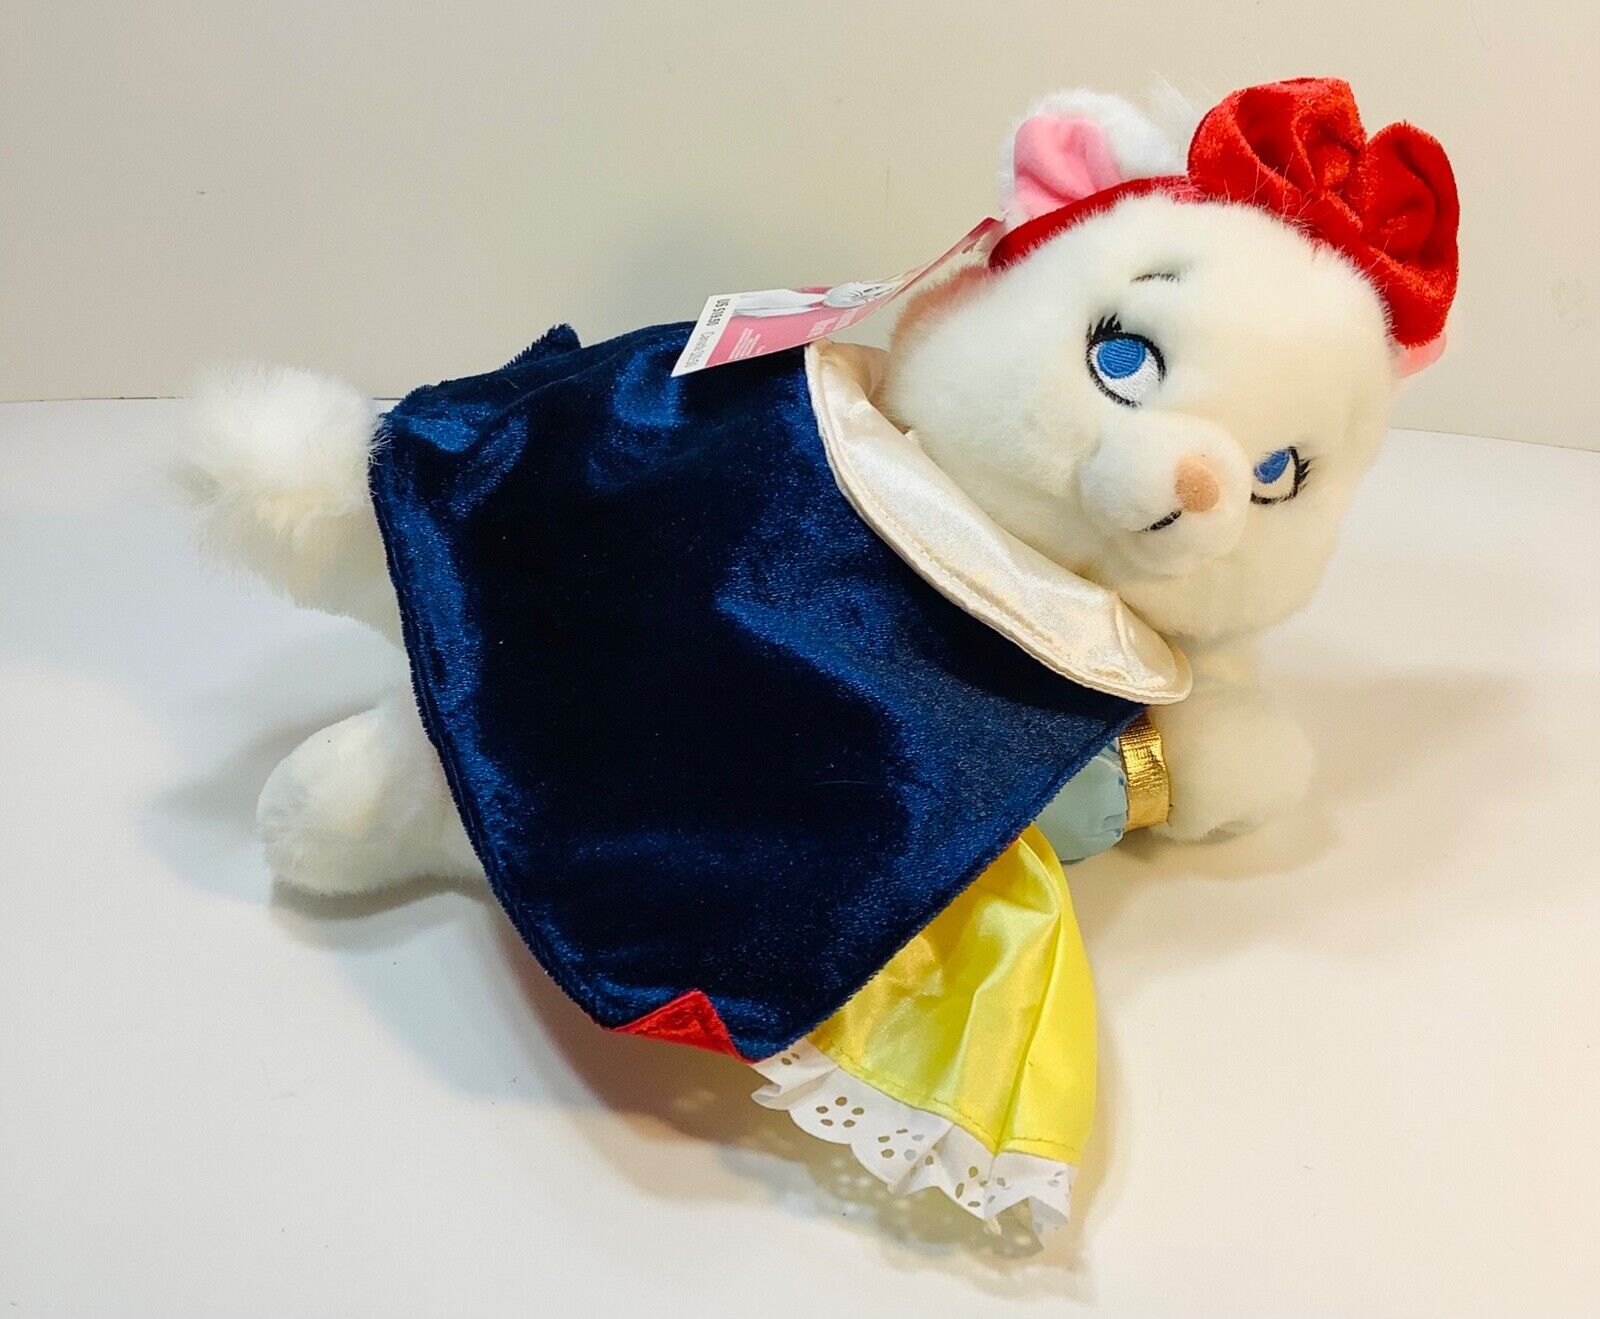 Vintage Disney store Princess Marie kitty as Snow White plush stuffed animal NWT